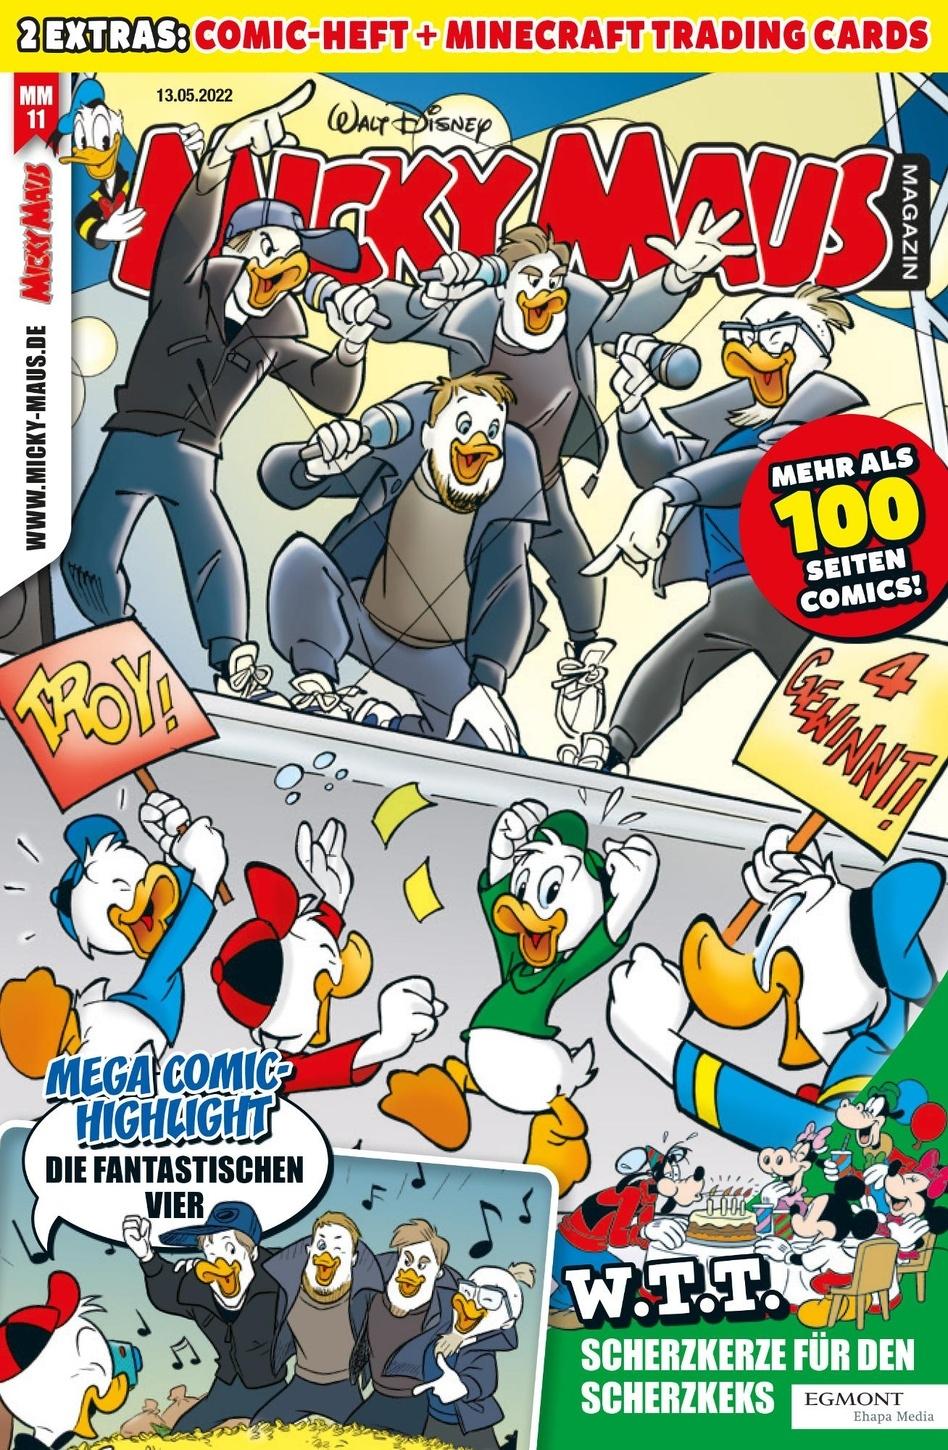 Cover zur neuen Micky Maus Magzin Ausgabe mit den Fanta 4